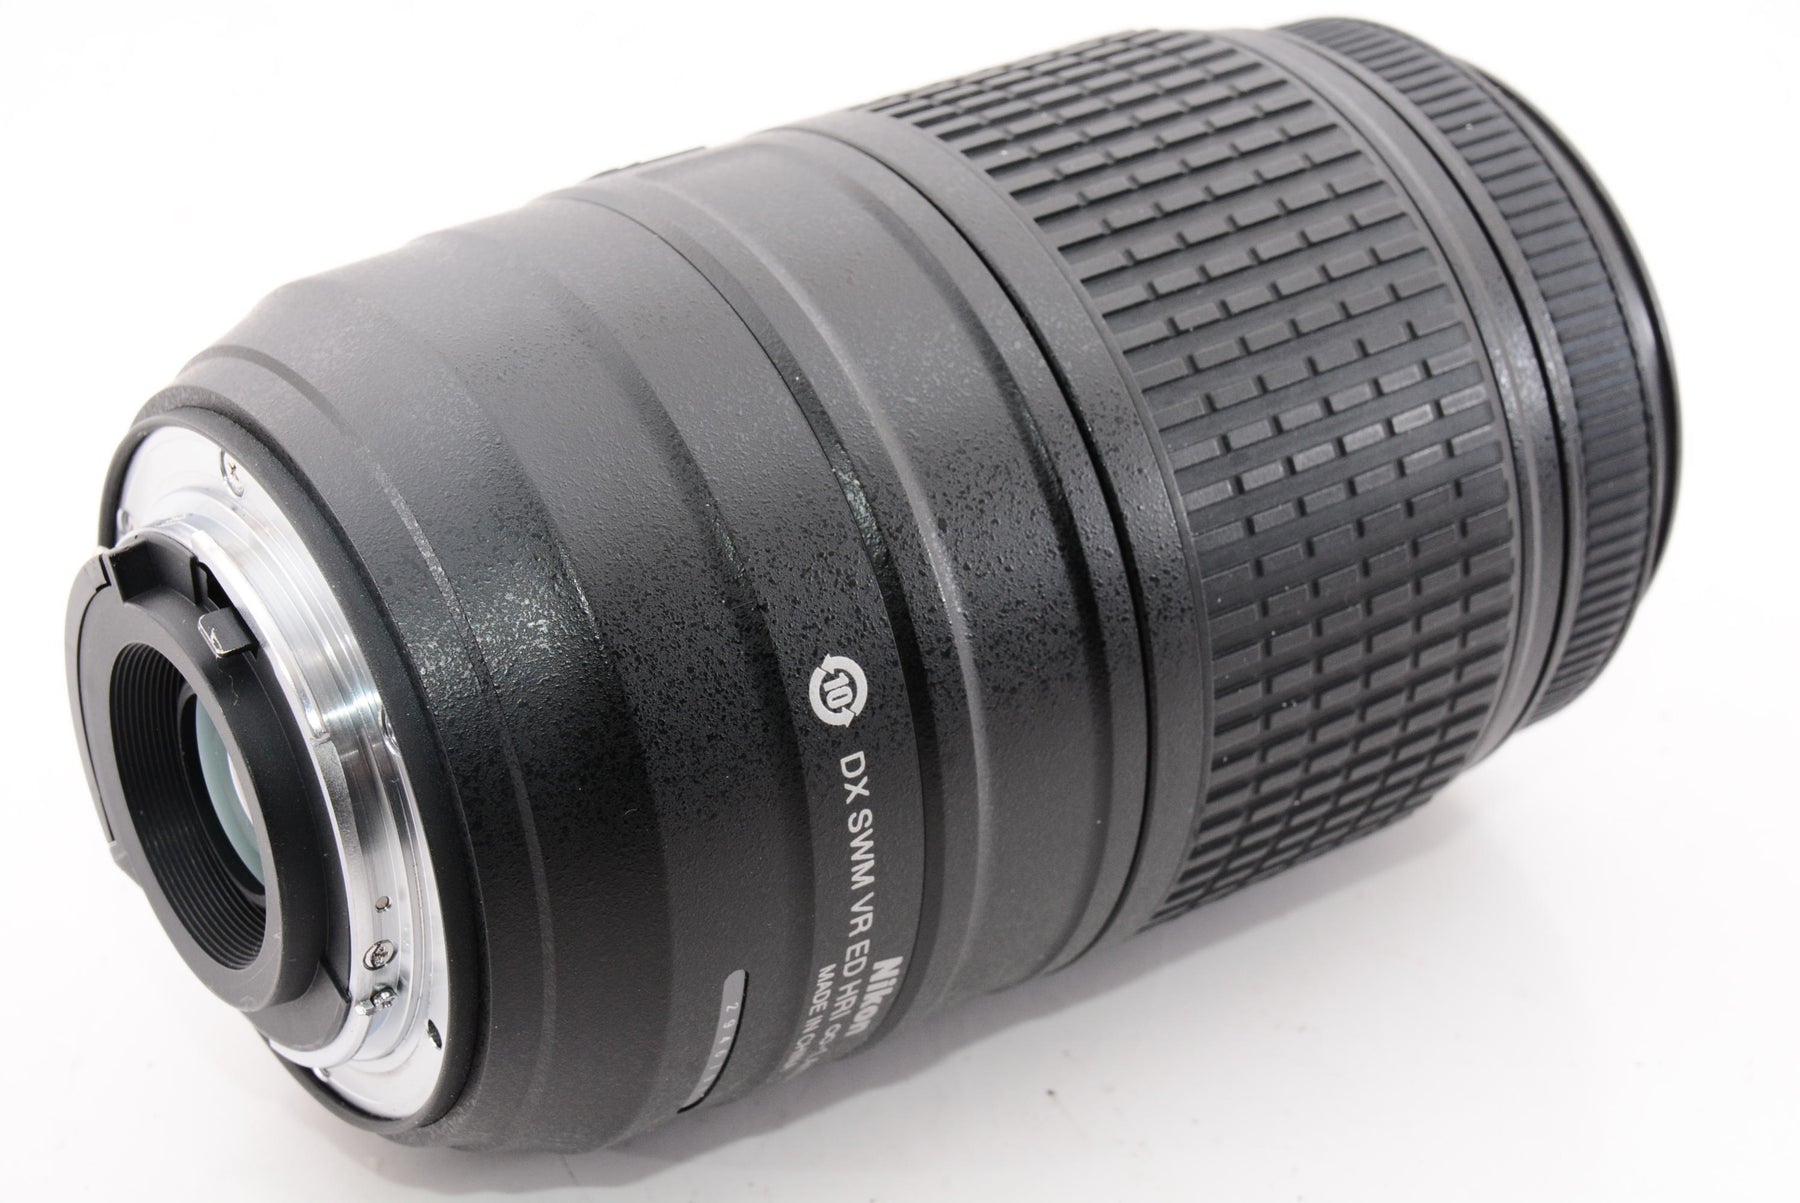 Nikon 望遠ズームレンズ AF-S DX NIKKOR 55-300mm f/4.5-5.6G ED VR